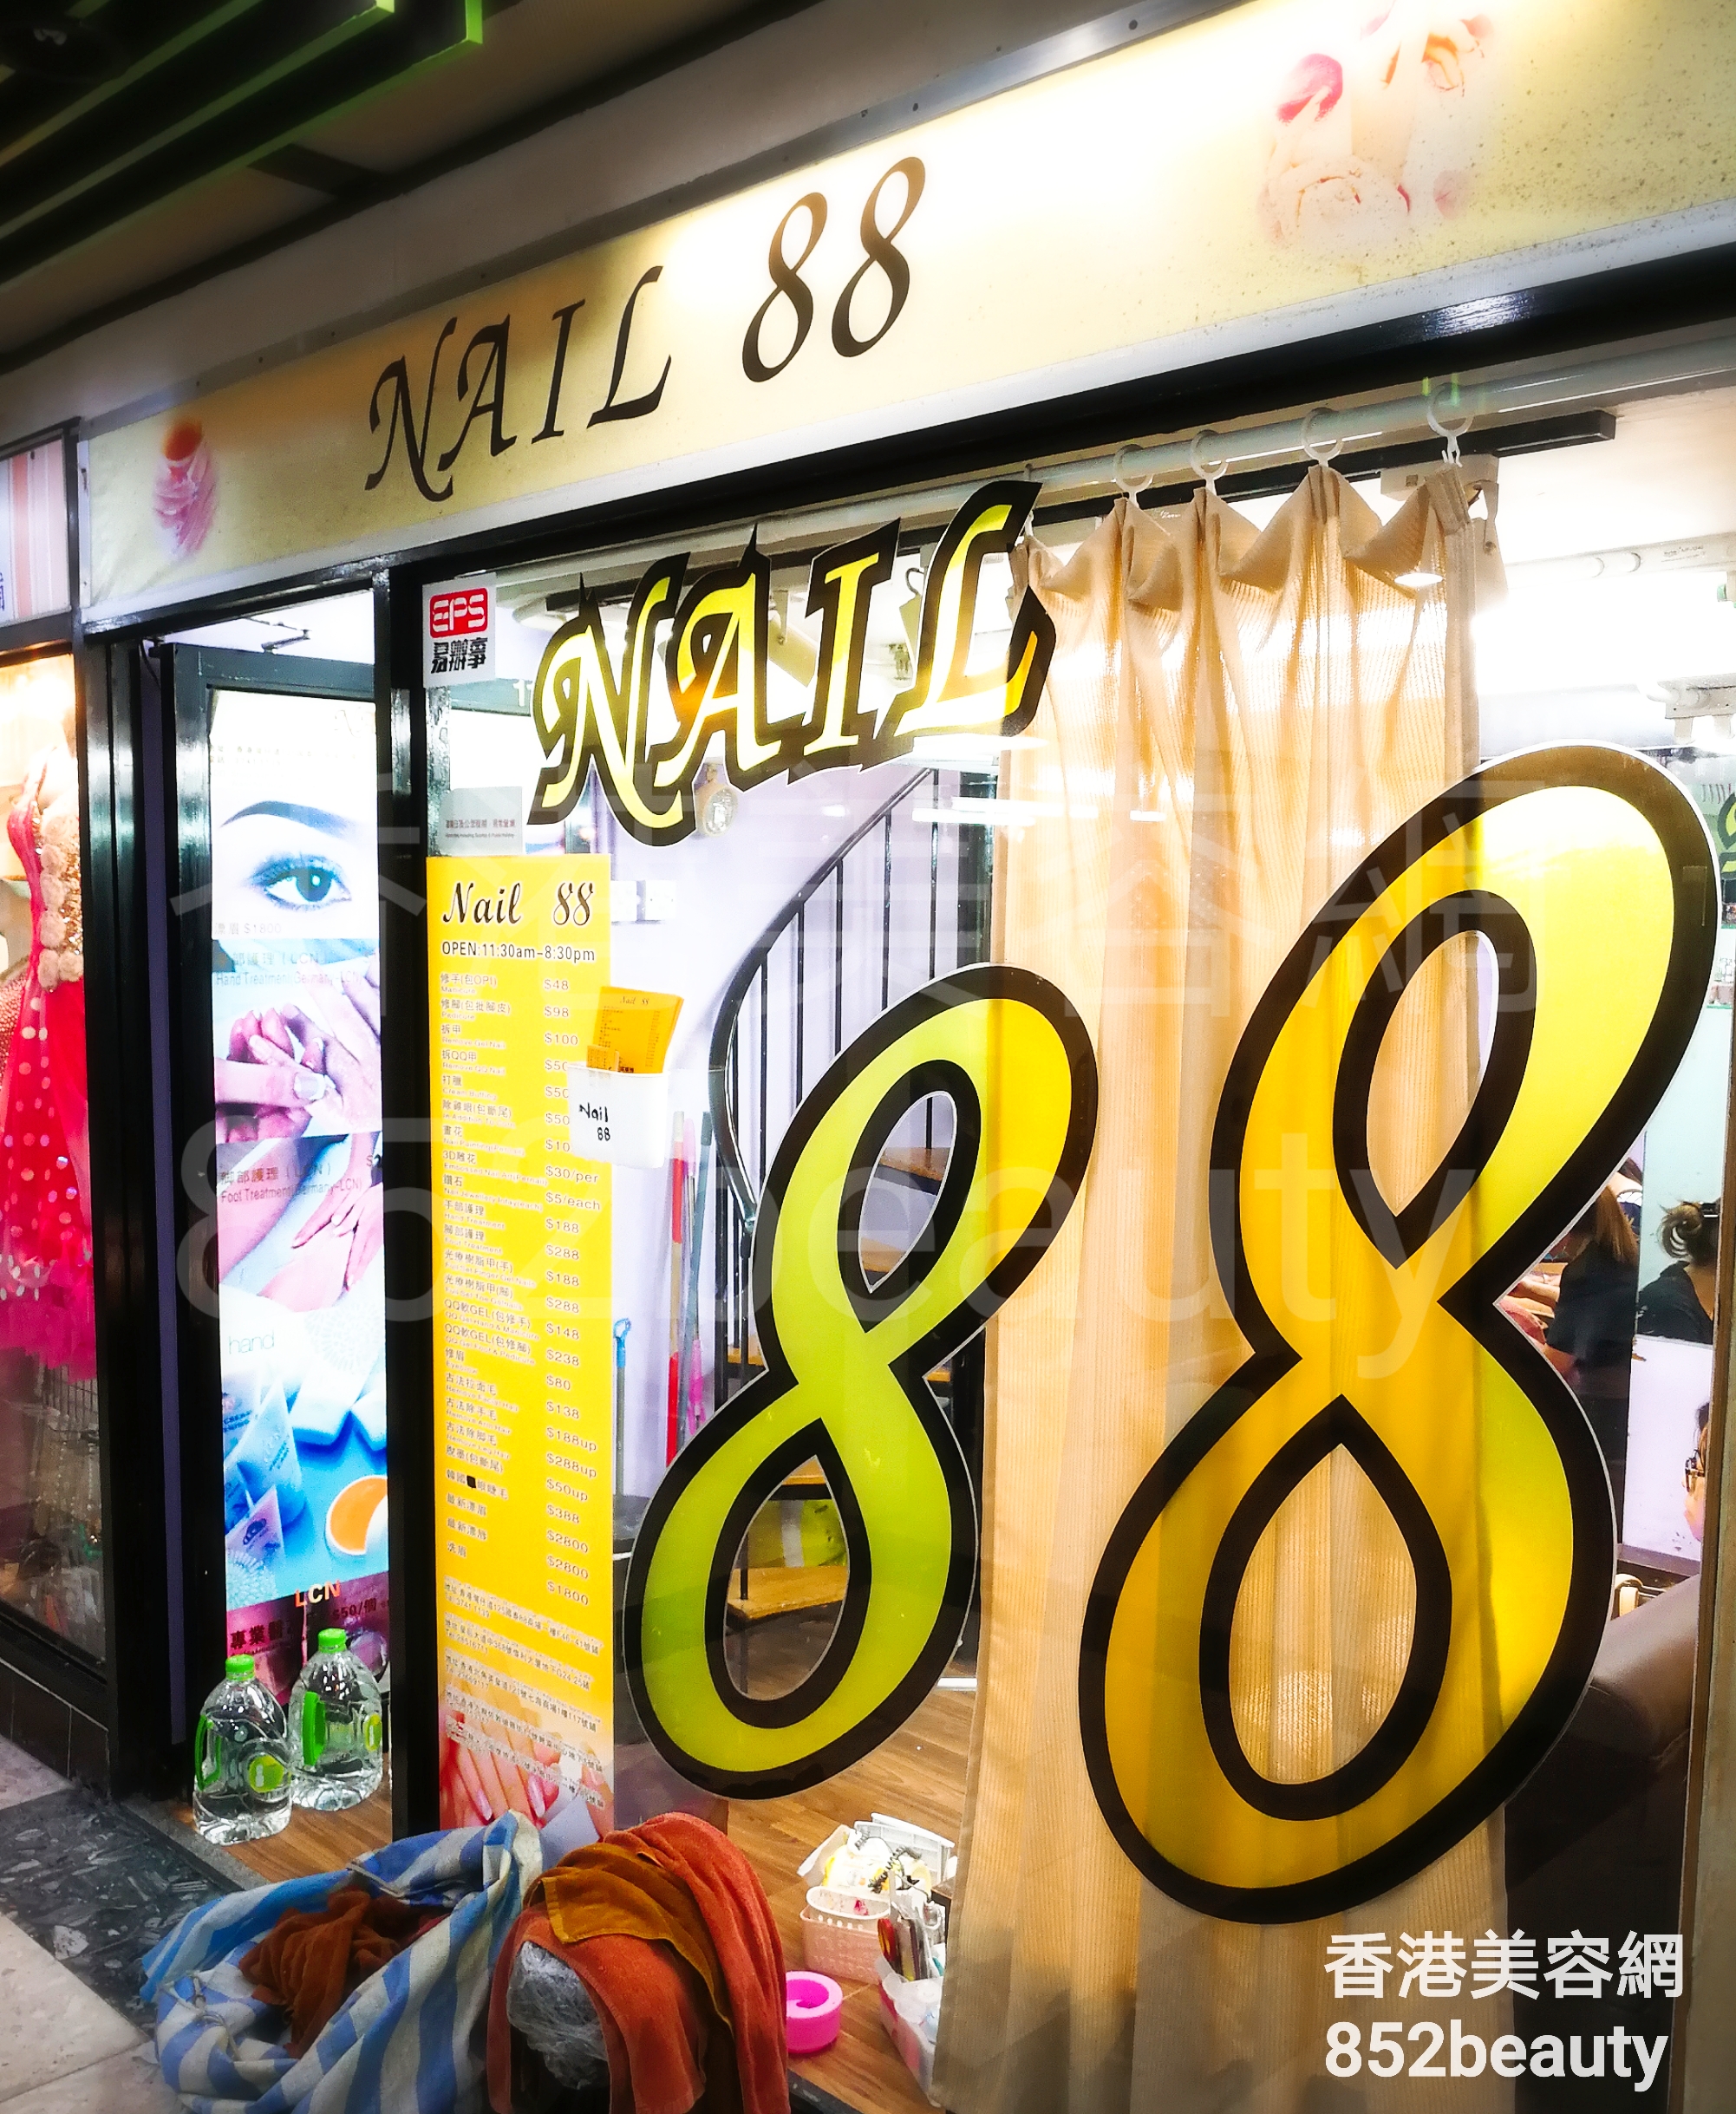 香港美容網 Hong Kong Beauty Salon 美容院 / 美容師: Nail 88 (北角店)